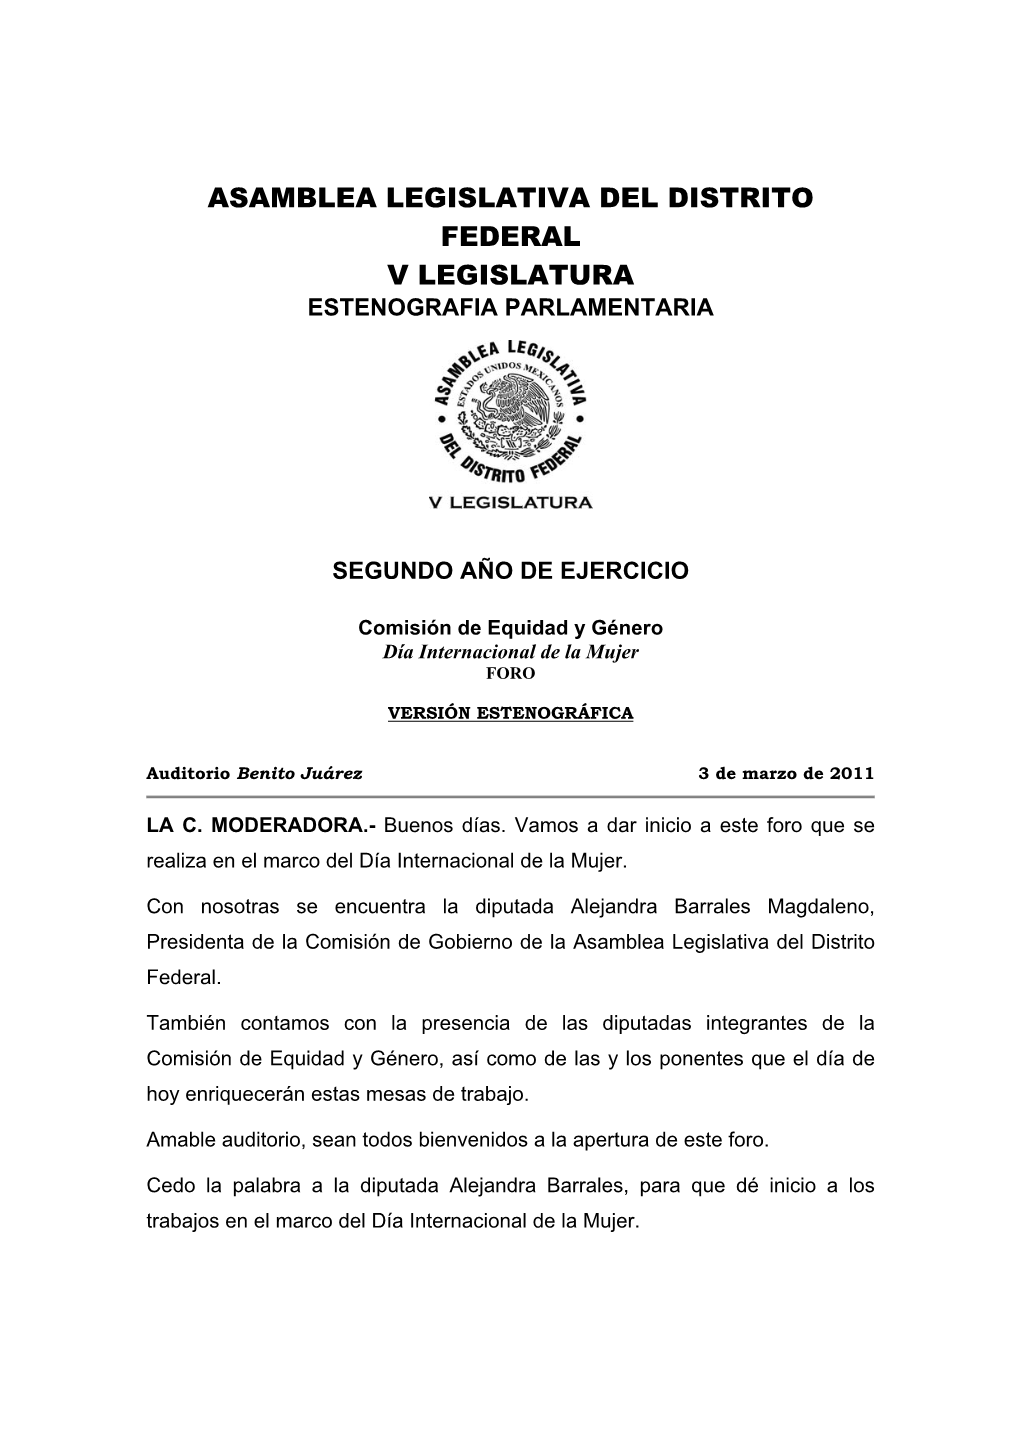 TERCER AÑO DE EJERCICIO -.::Asamblea Legislativa Del Distrito